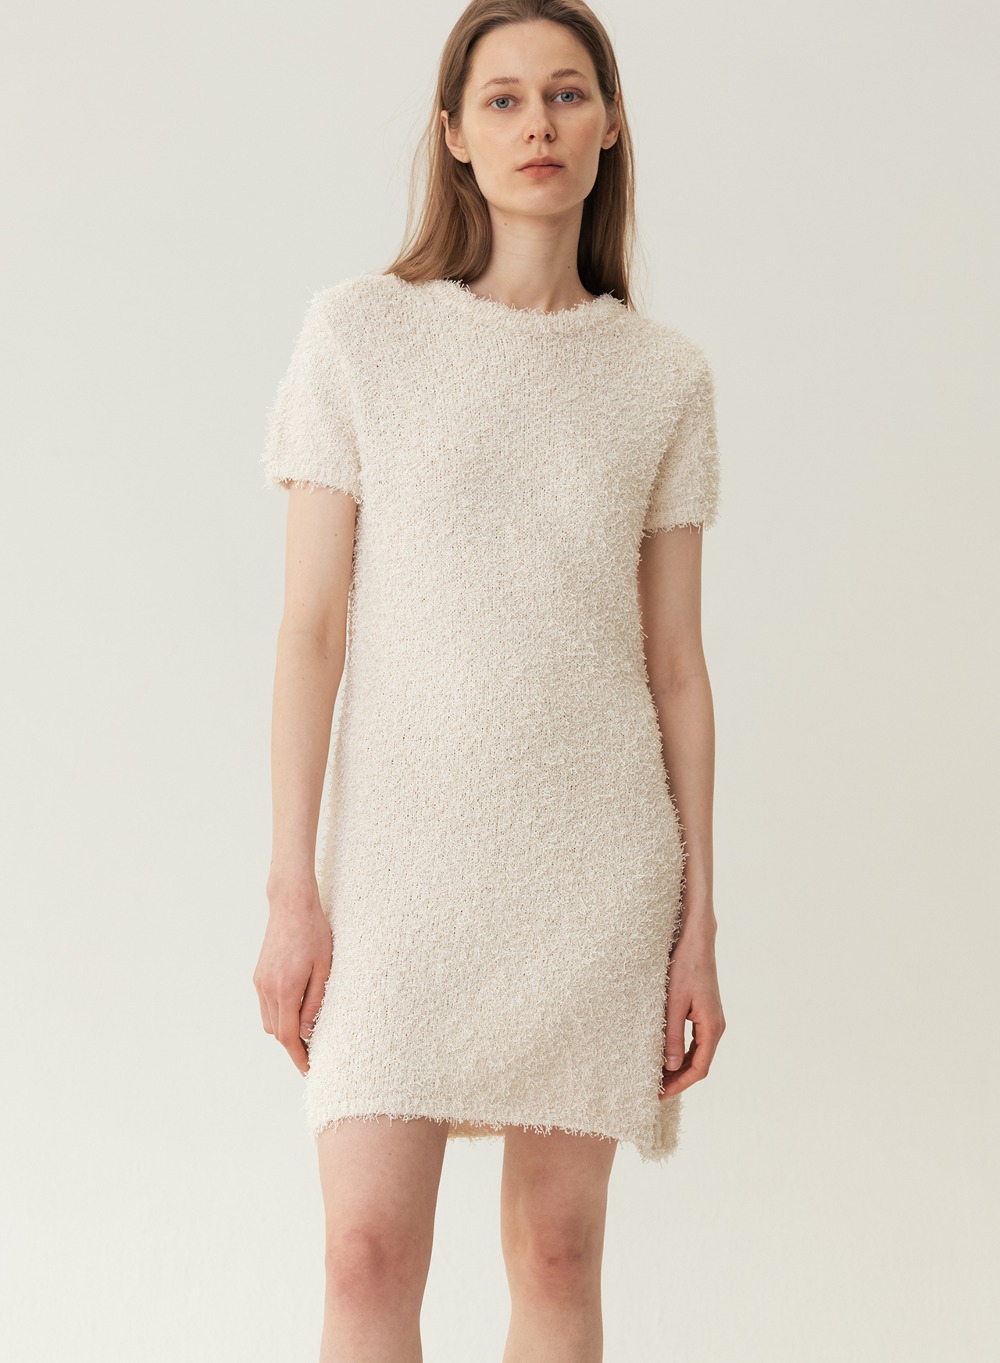 RESORT23 Texture Knitted Dress Cream-Yellow